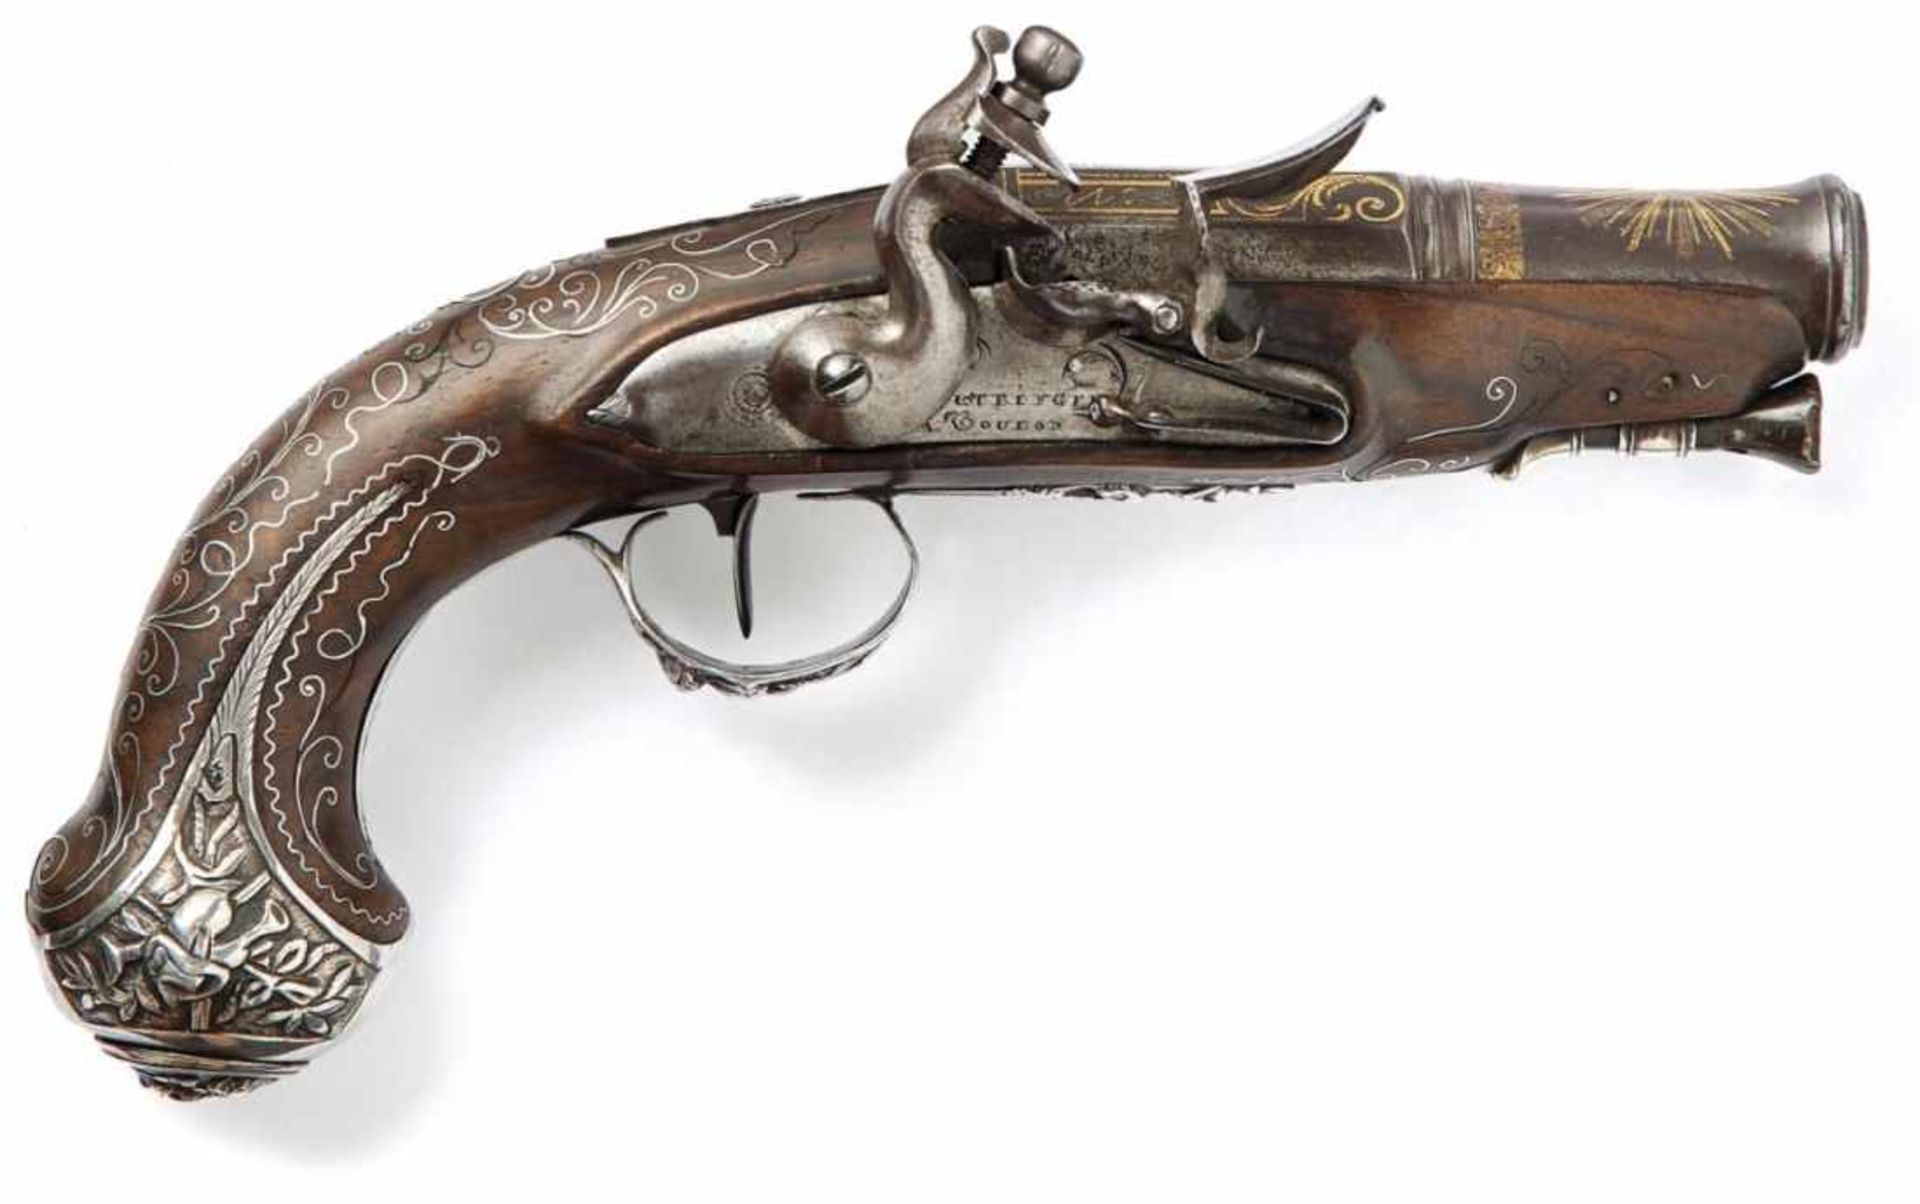 Silbermontierte Steinschloss-Taschenpistole Frankreich, um 1800 Nussholzvollschaft mit filigranen